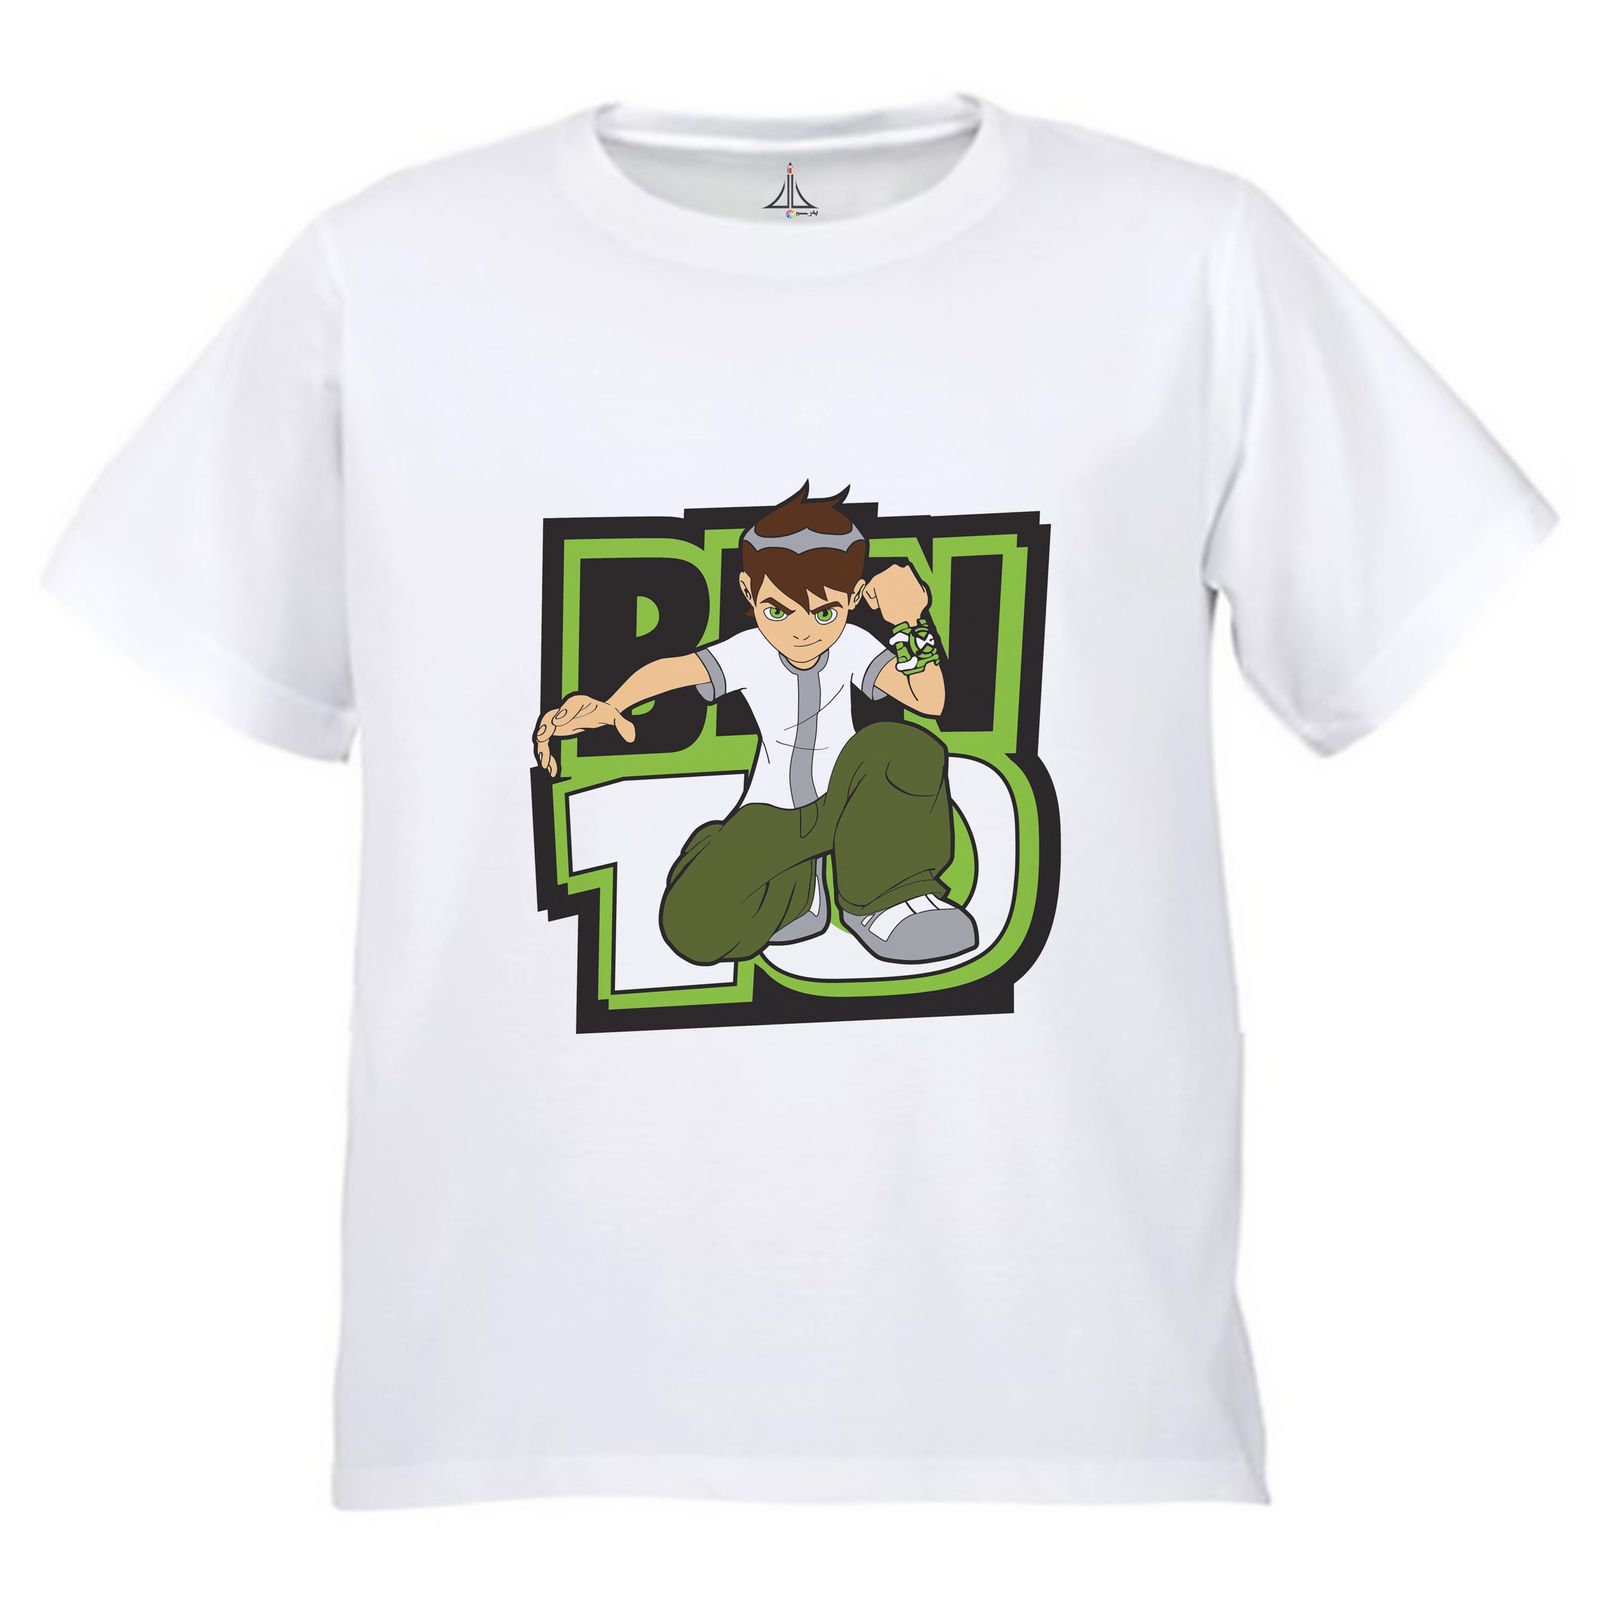 تی شرت آستین کوتاه بچگانه به رسم مدل بِن تِن کد 9937 -  - 1